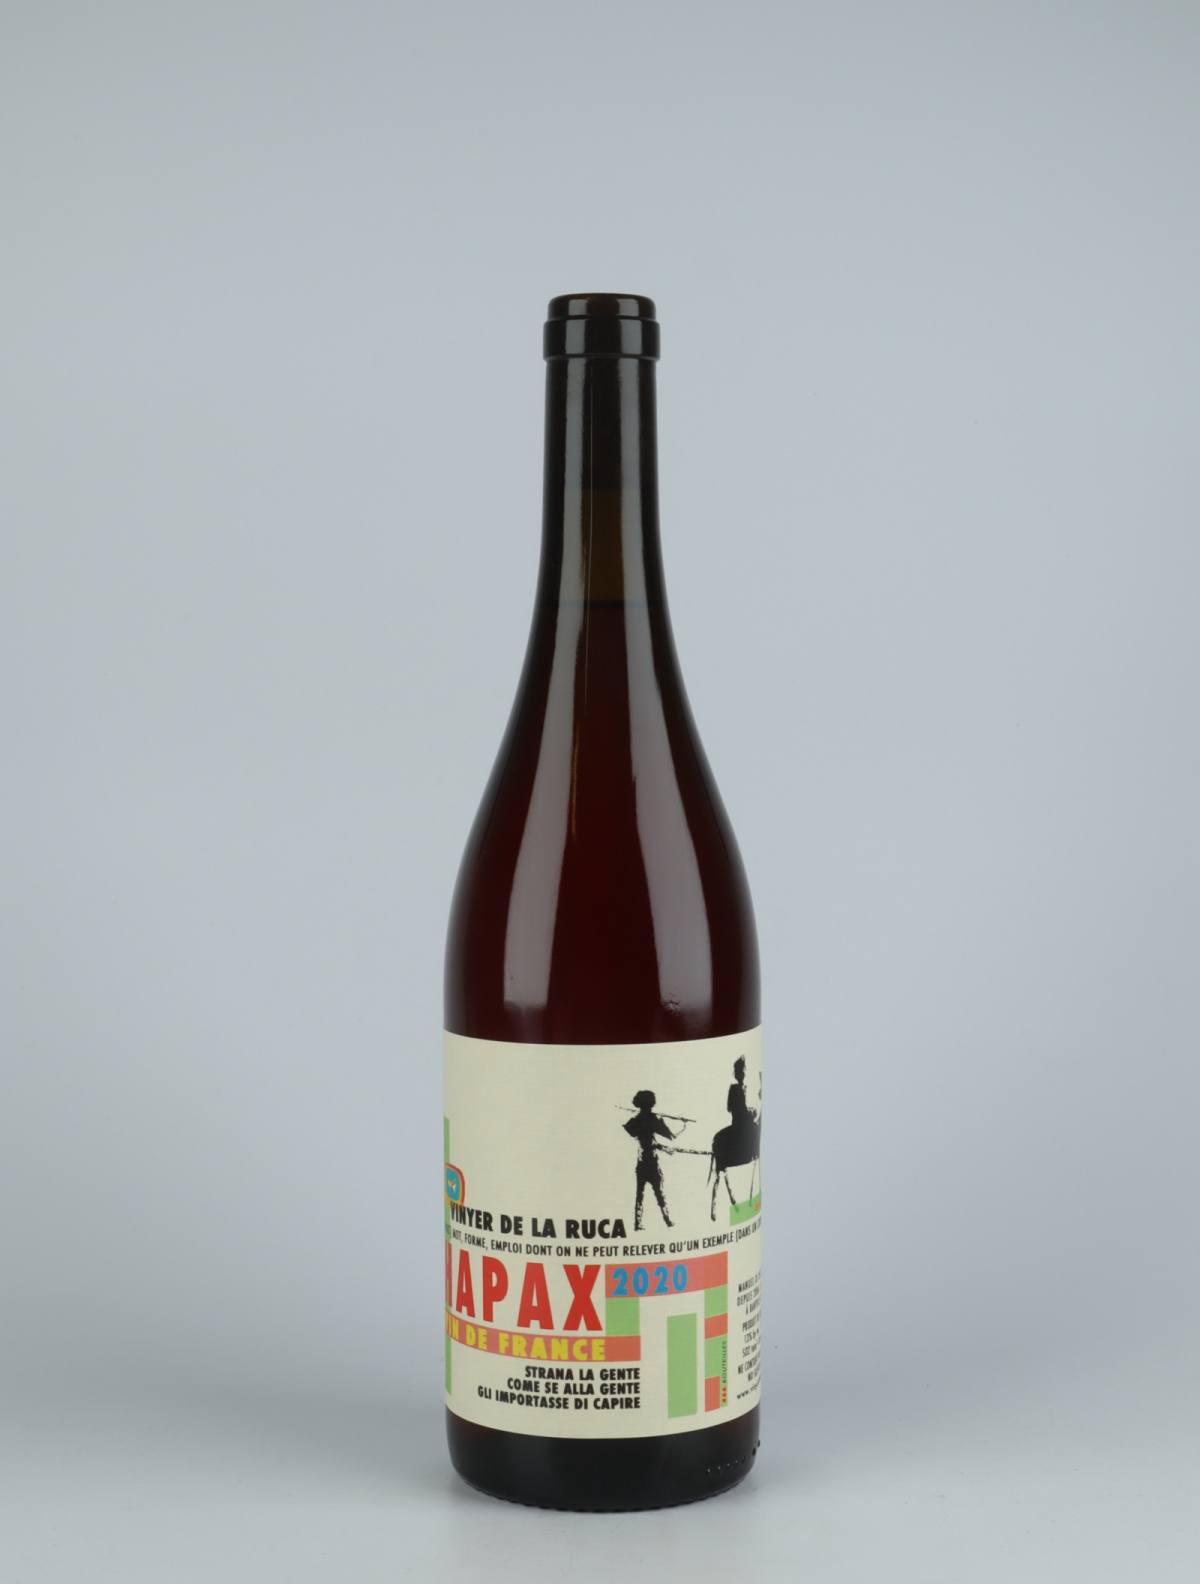 A bottle 2020 Hapax Rosé from Vinyer de la Ruca, Rousillon in France